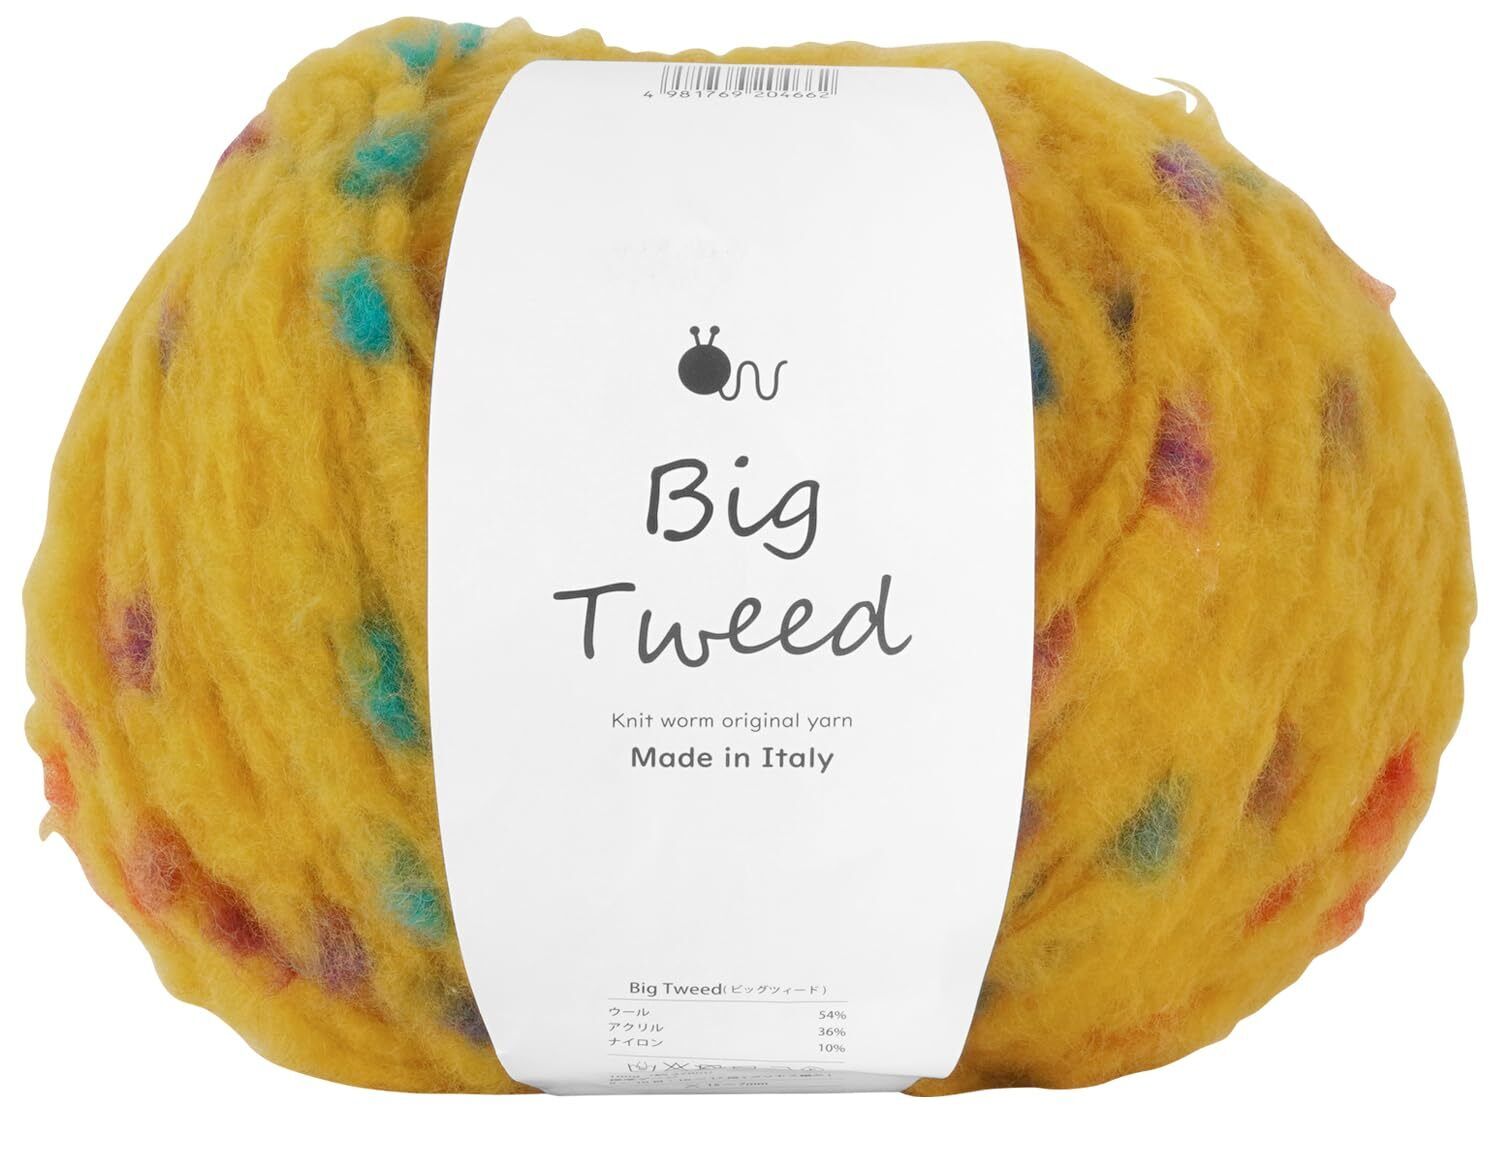 Raw wool yarn 1 ball big tweed super thick 100g (approx. 270m) 54% wool, 36% acr